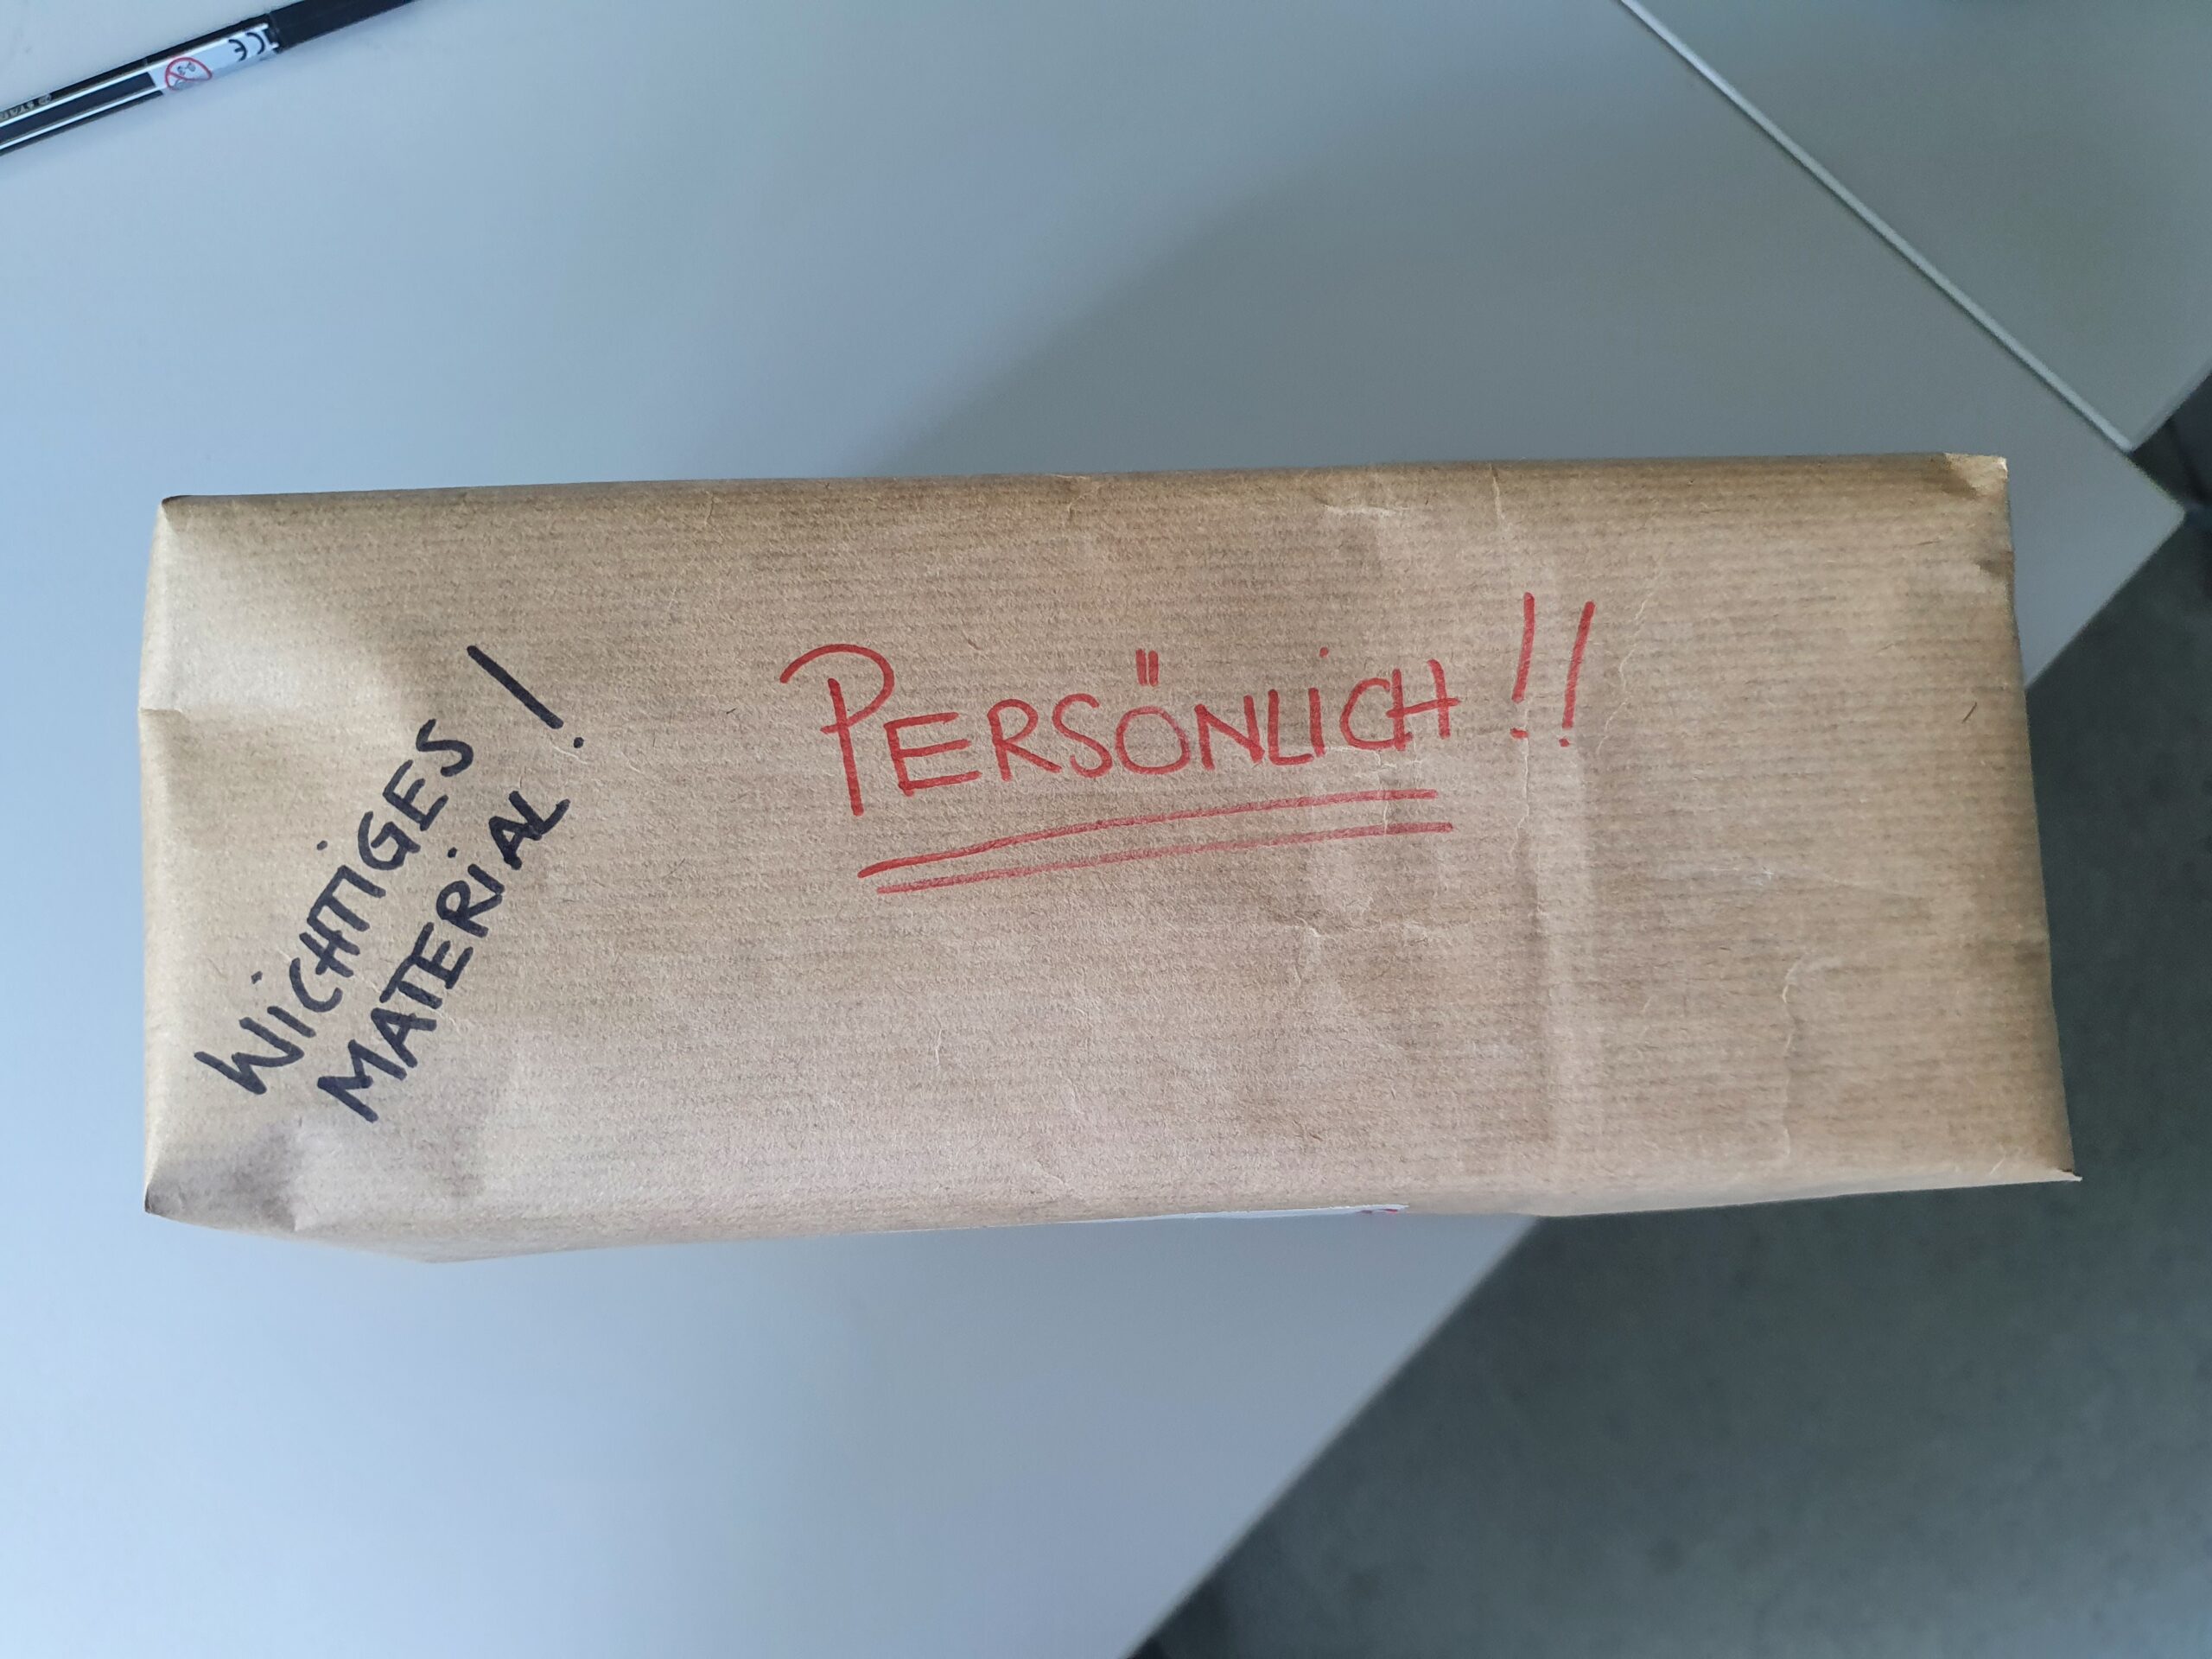 Ein braunes Paket mit roter und schwarzer Beschriftung: "Persönlich!", "Wichtiges Material!"